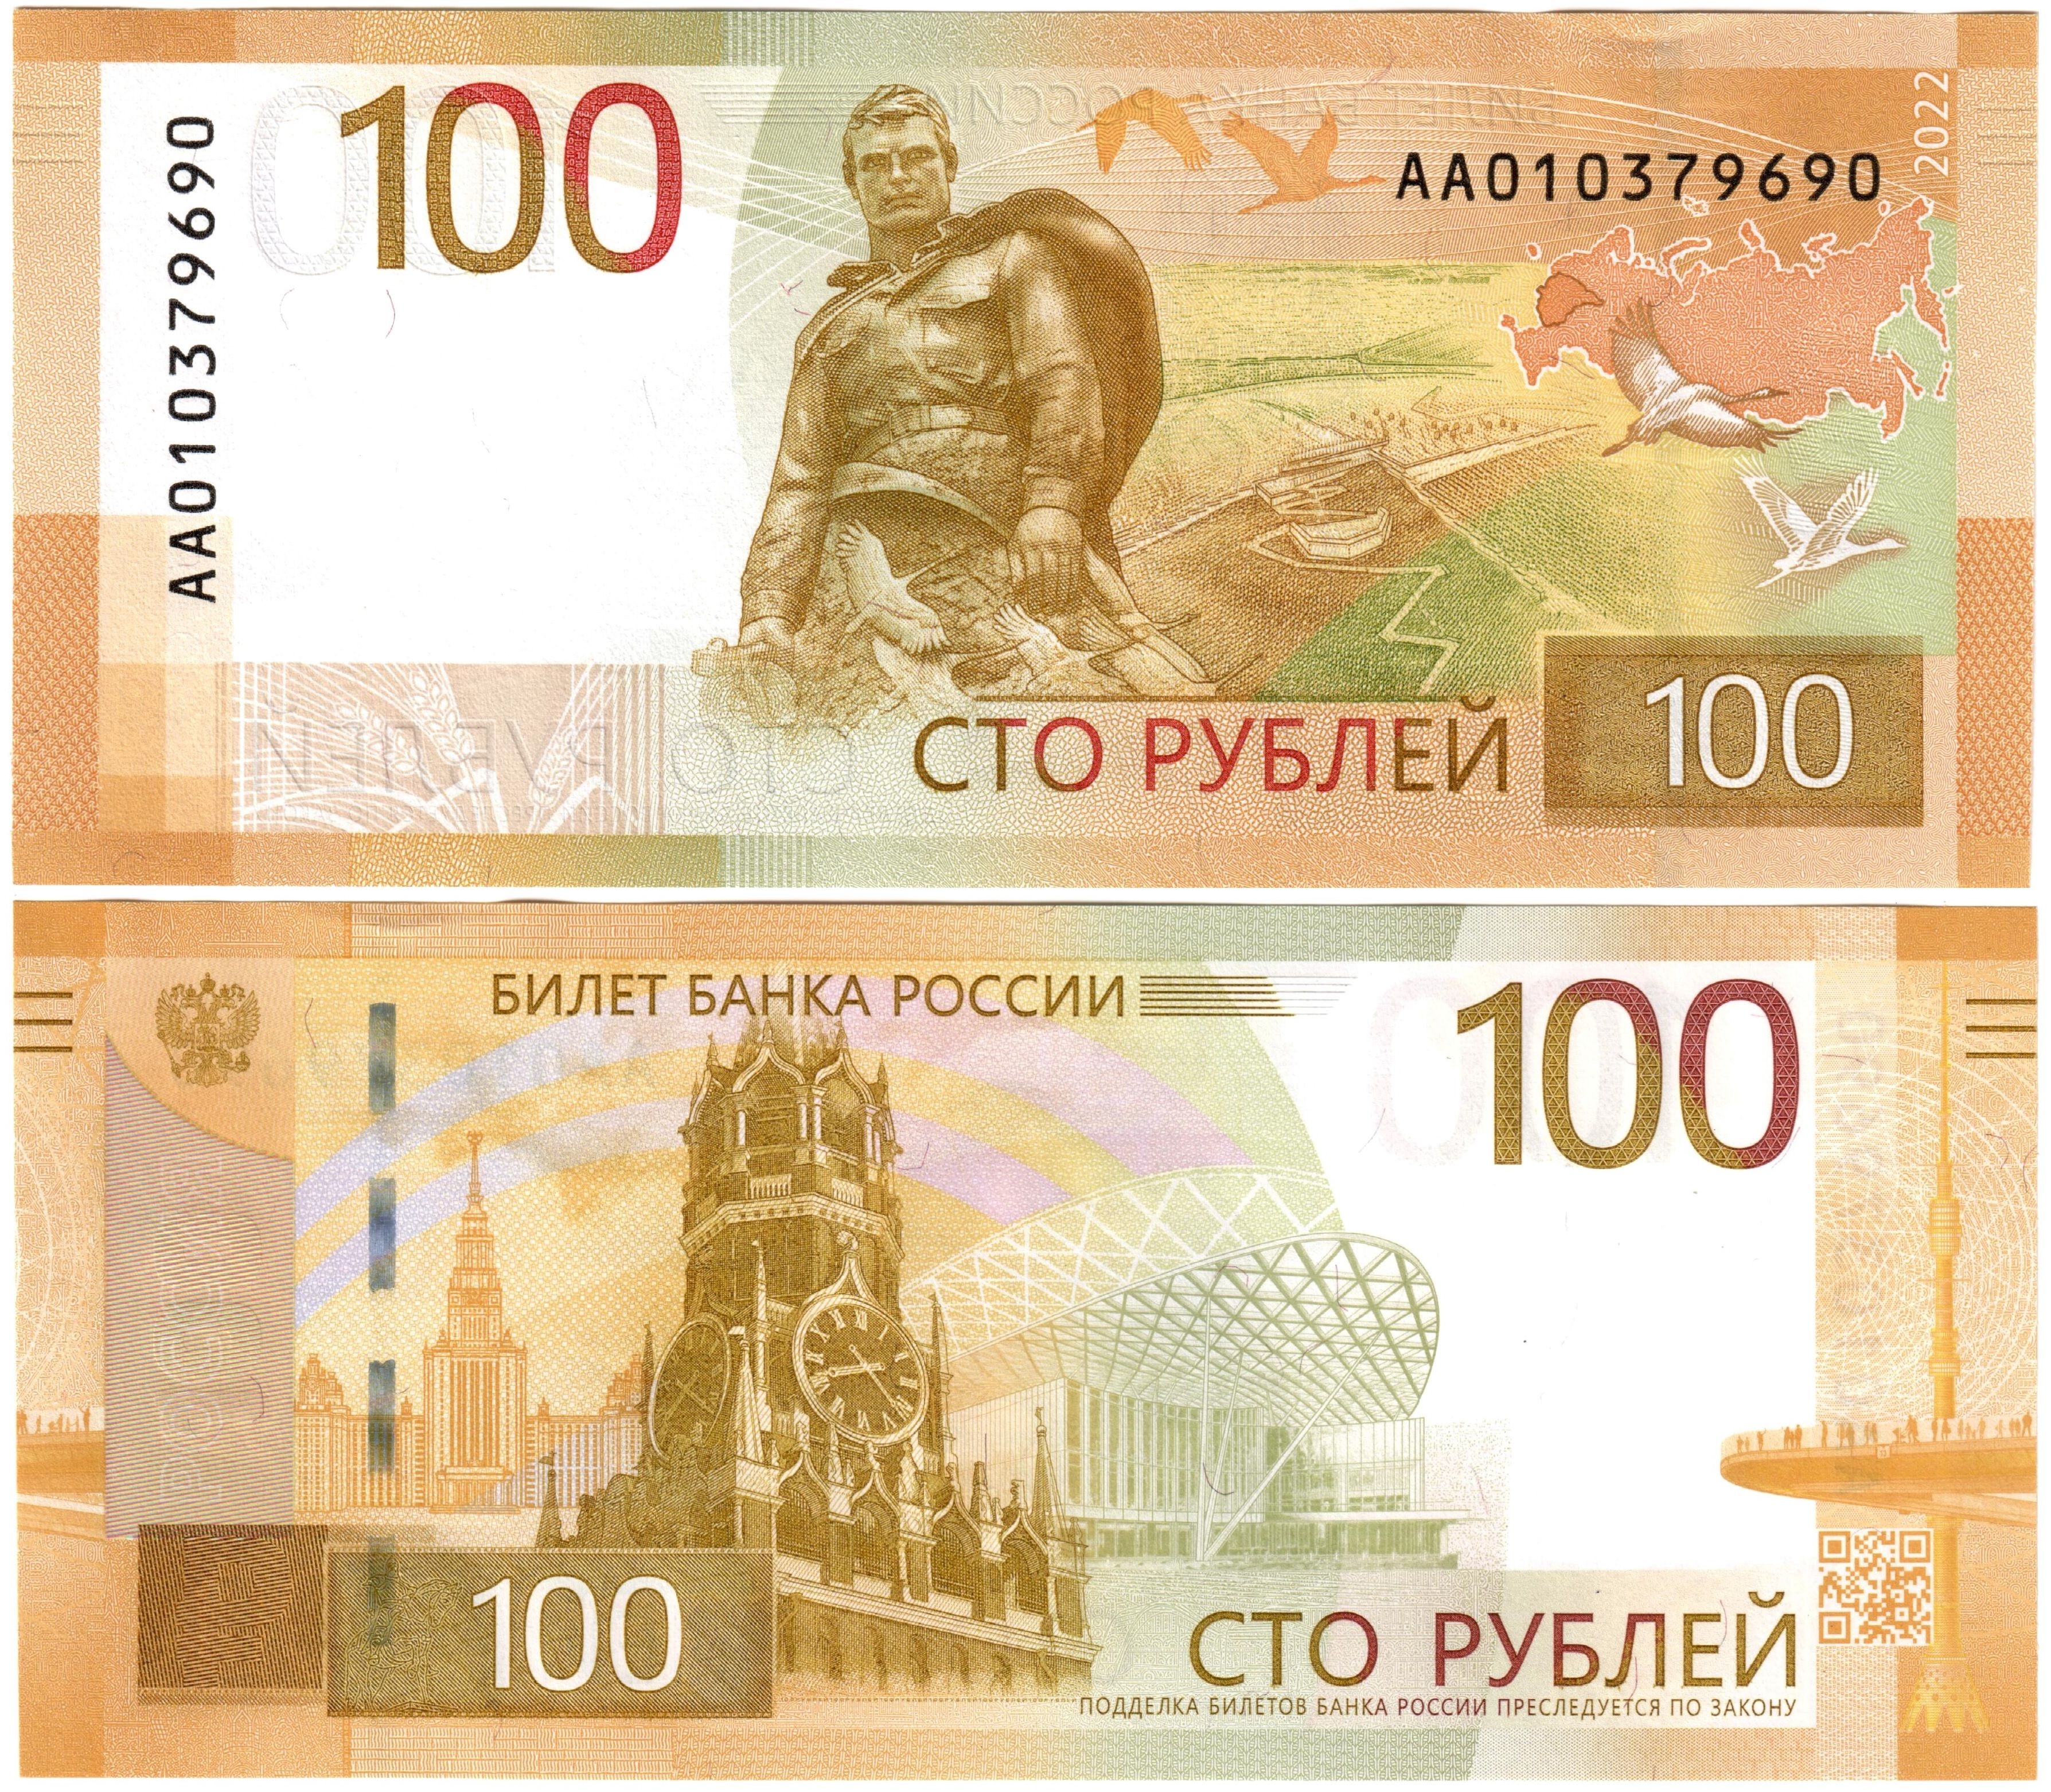 Новая 100 р купюра